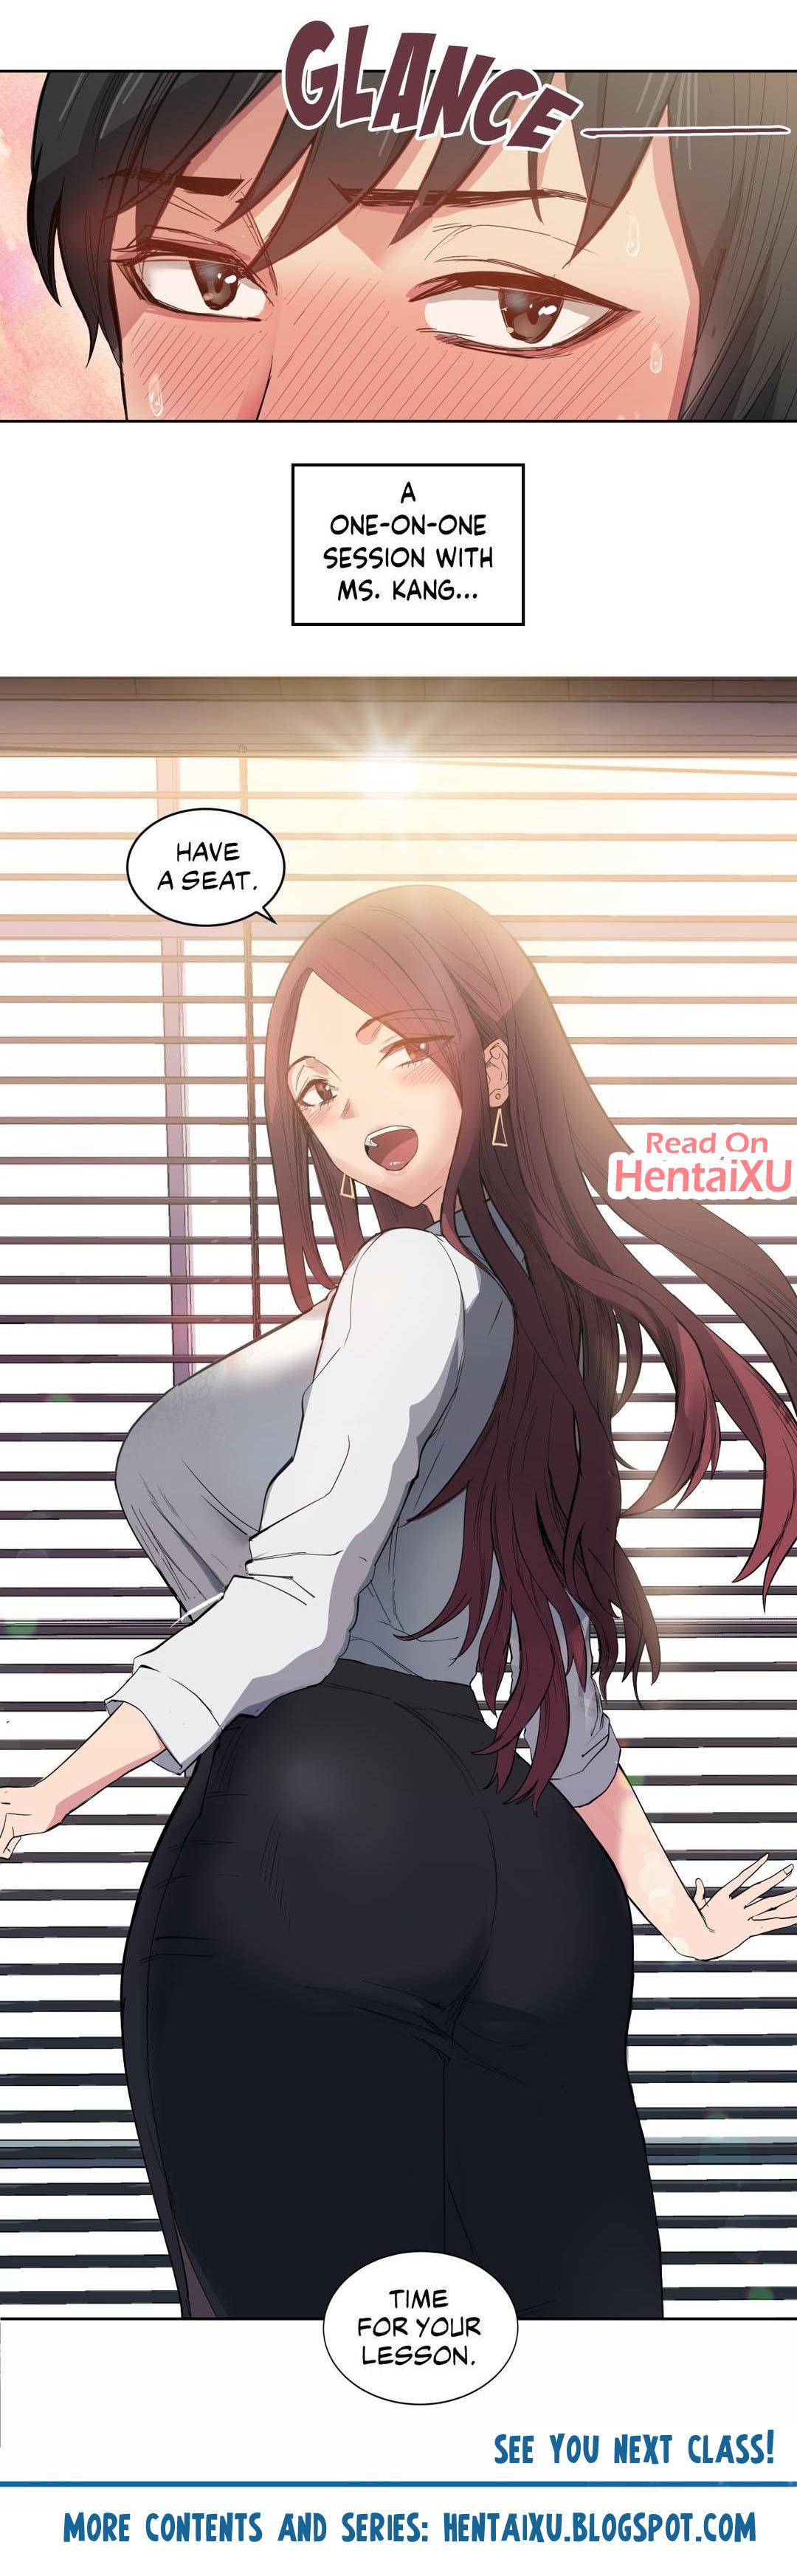 Porn manga in Busan you Anime Hentai